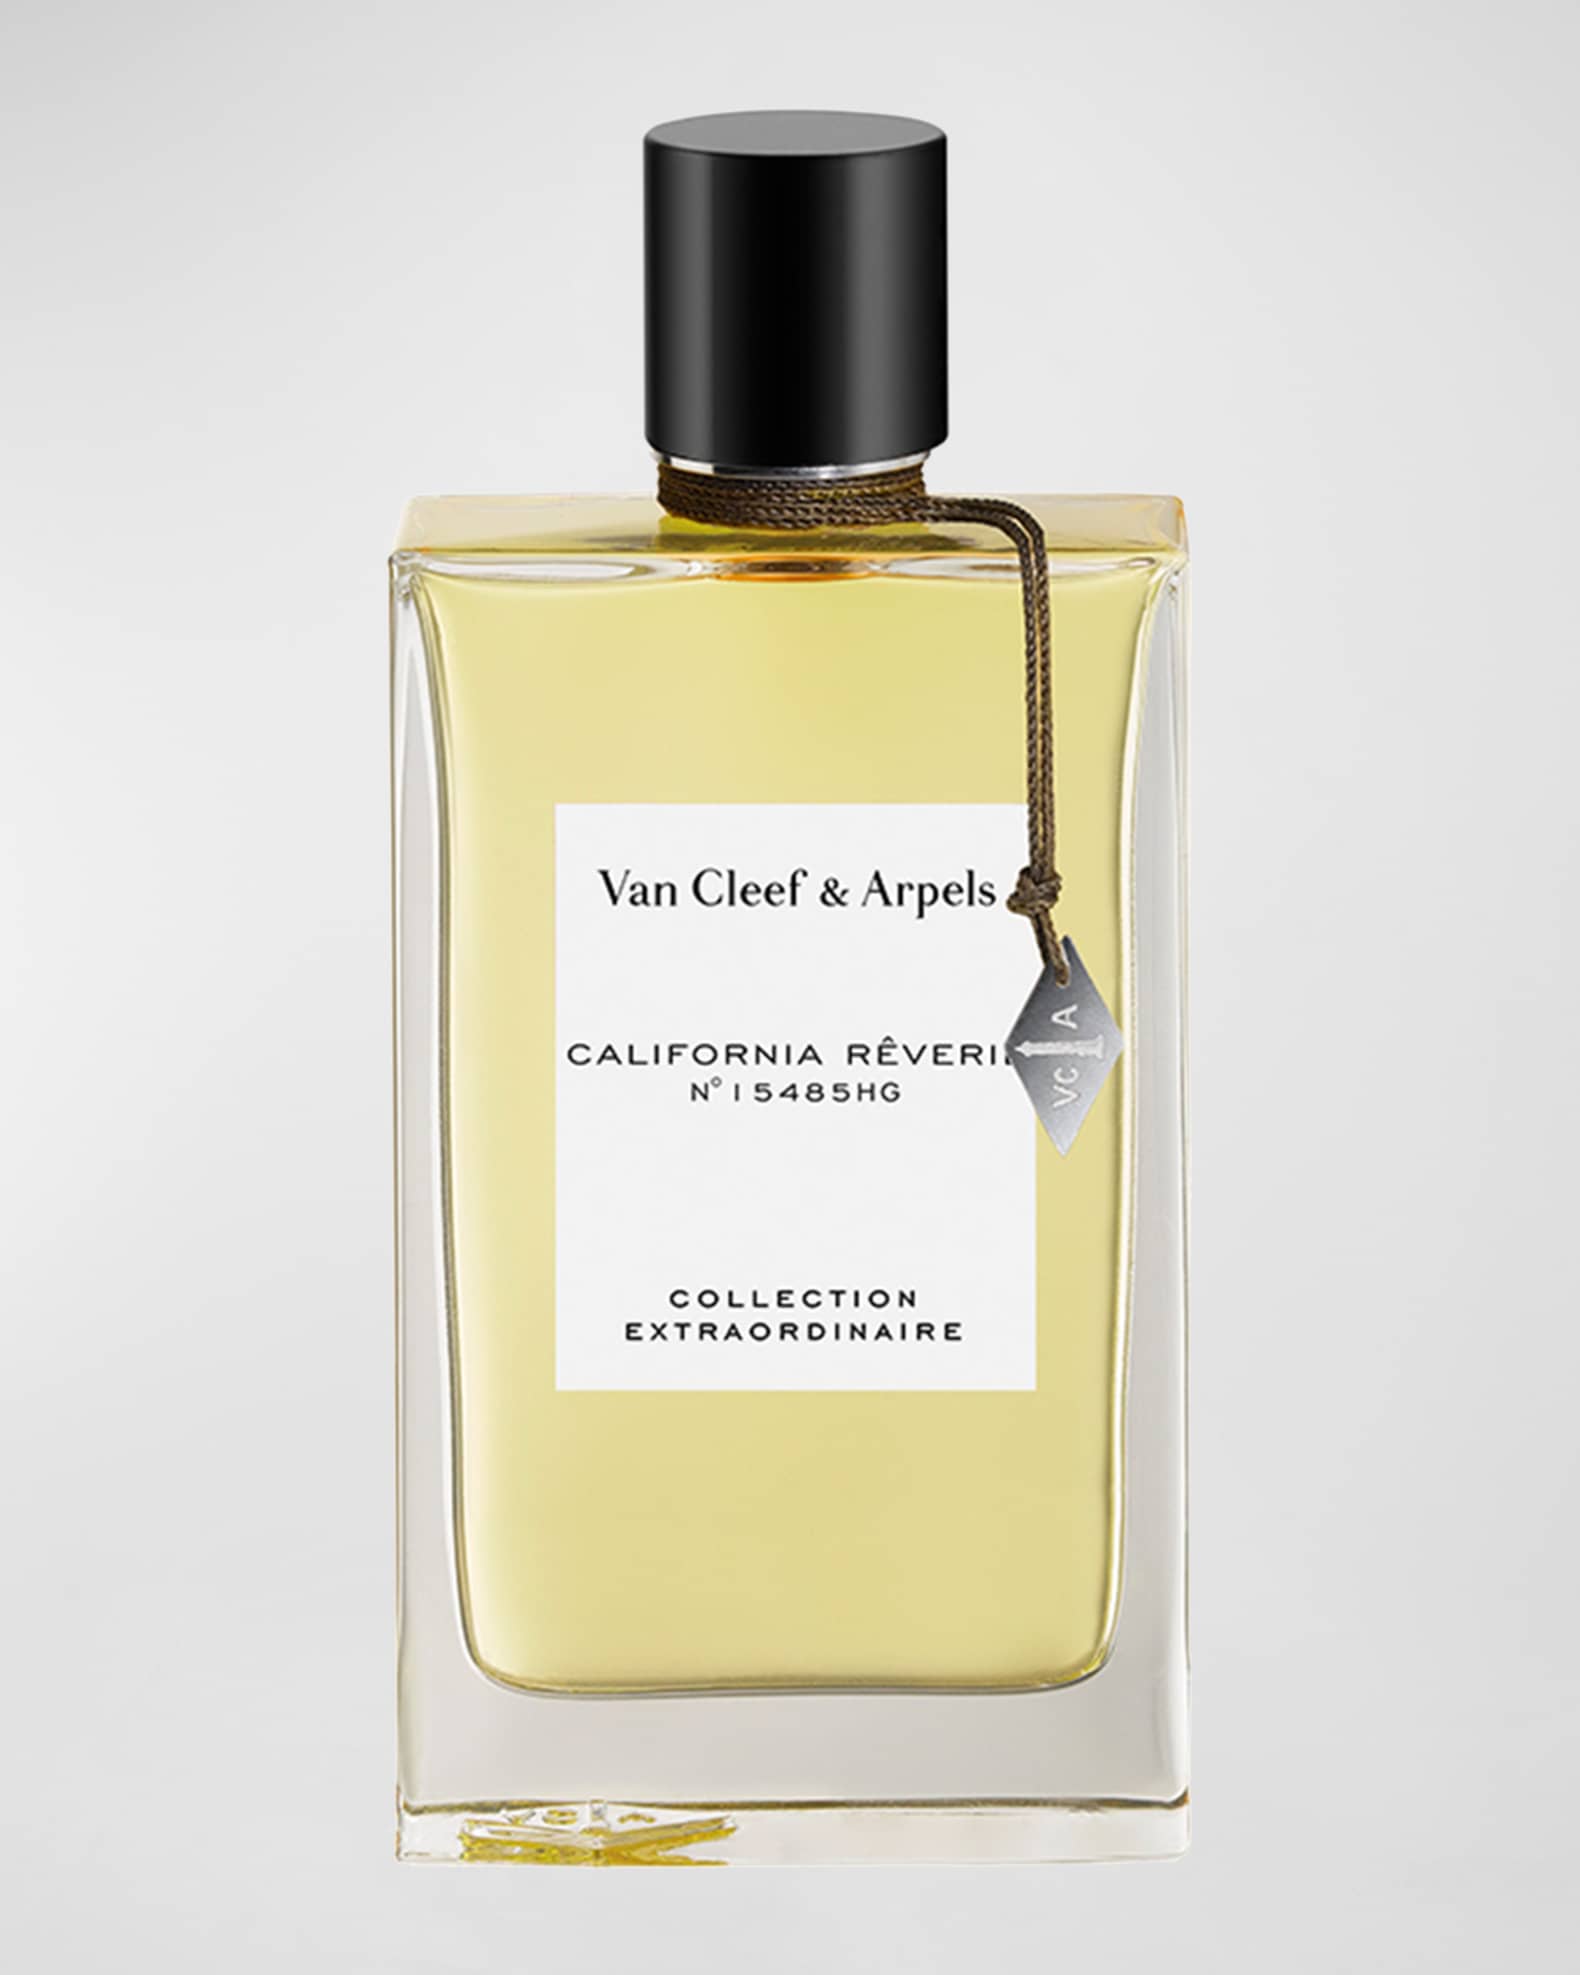 Shop for samples of California Dream (Eau de Parfum) by Louis